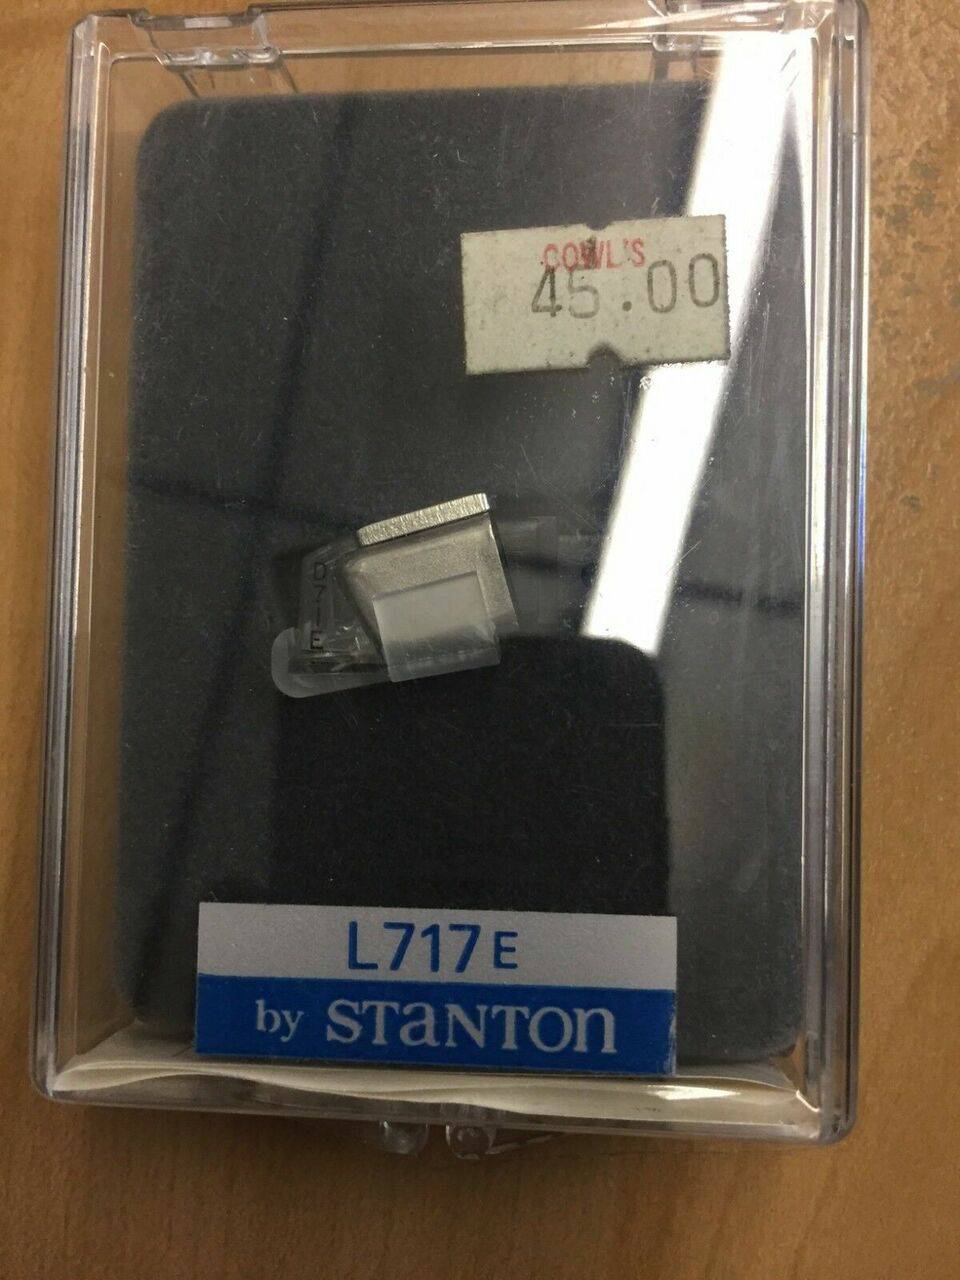 Stanton L717 E